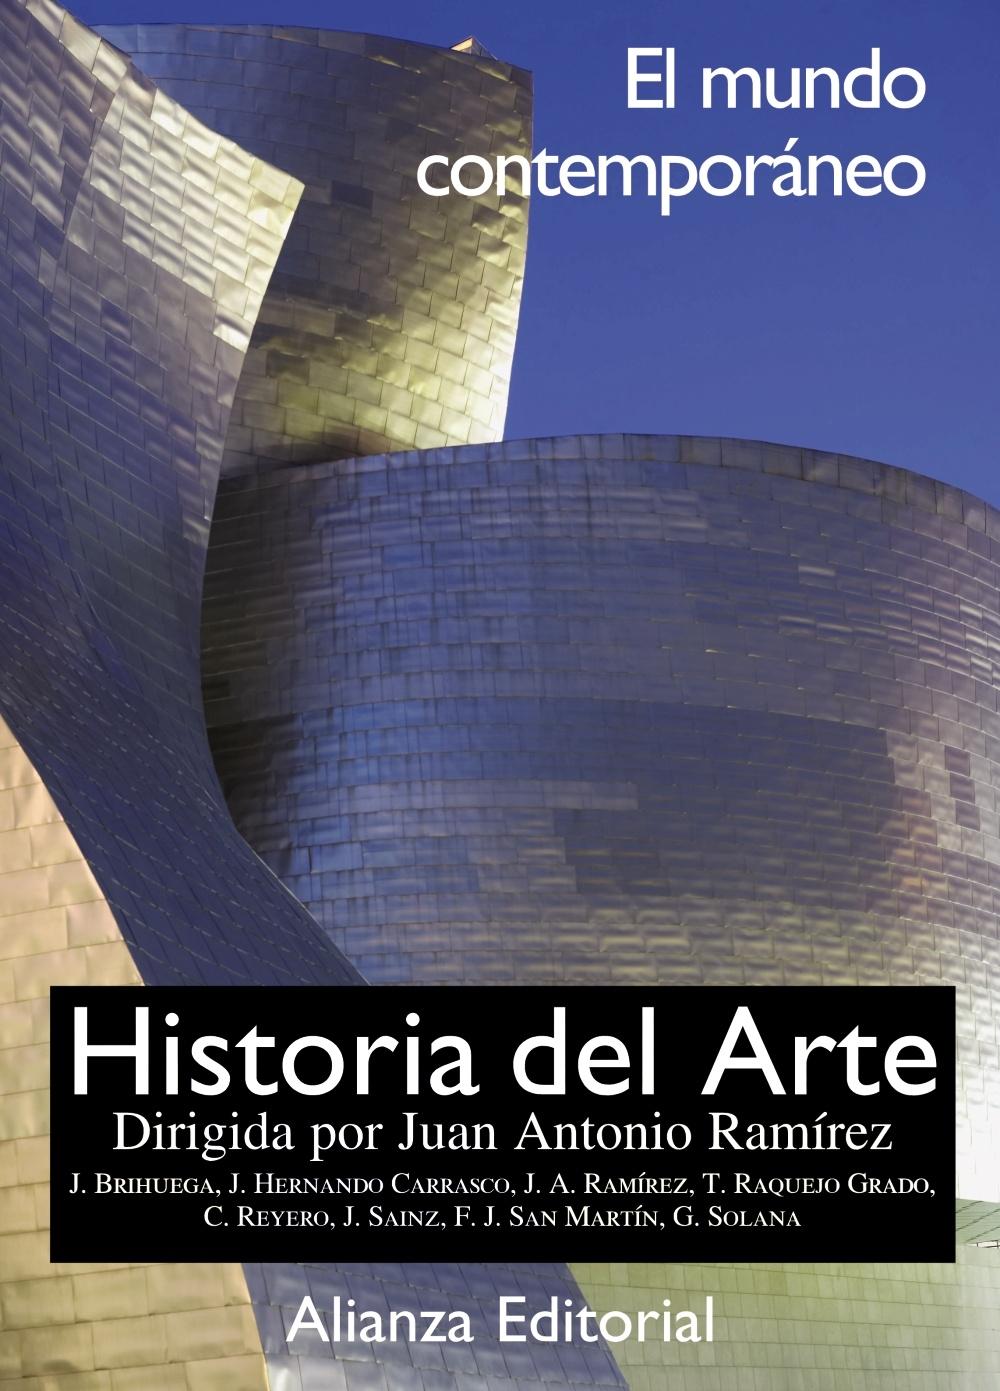 HISTORIA DEL ARTE Vol.4 "EL MUNDO CONTEMPORÁNEO"